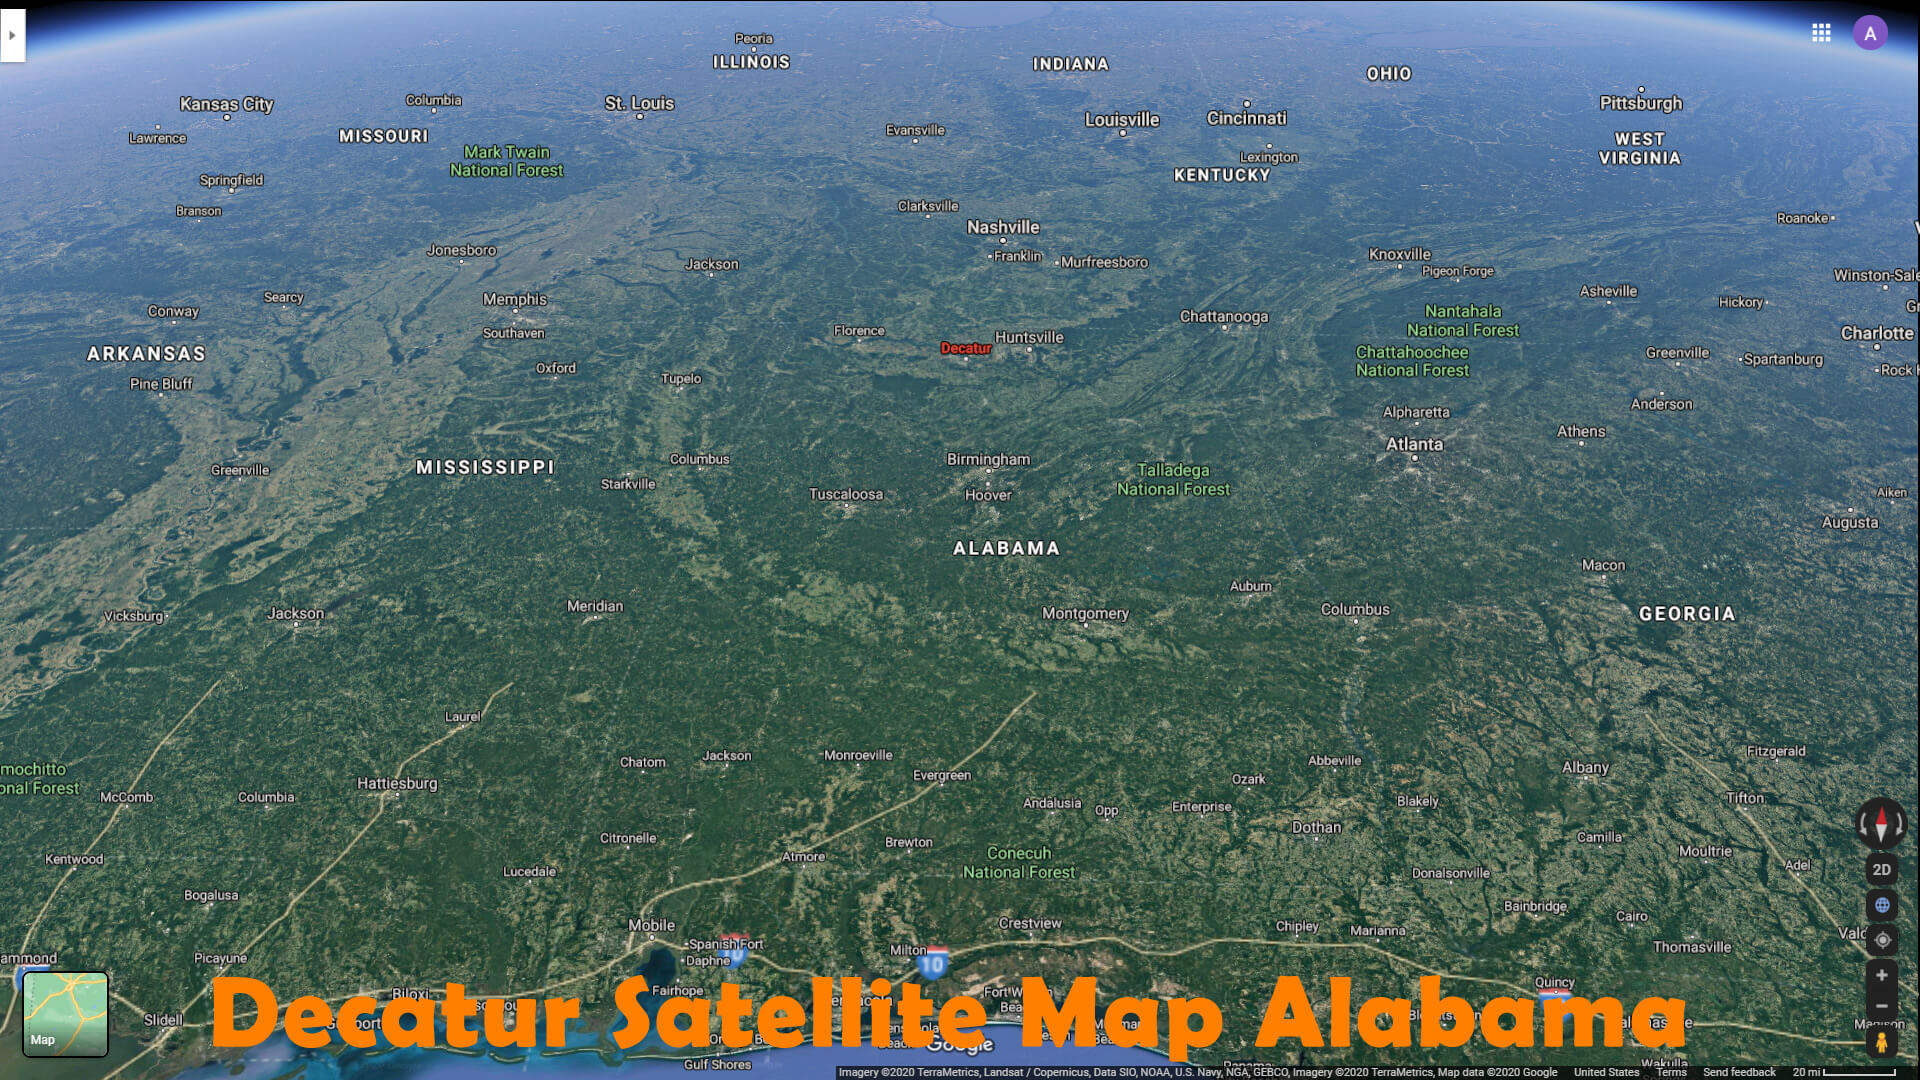 Decatur Satellite Map Alabama